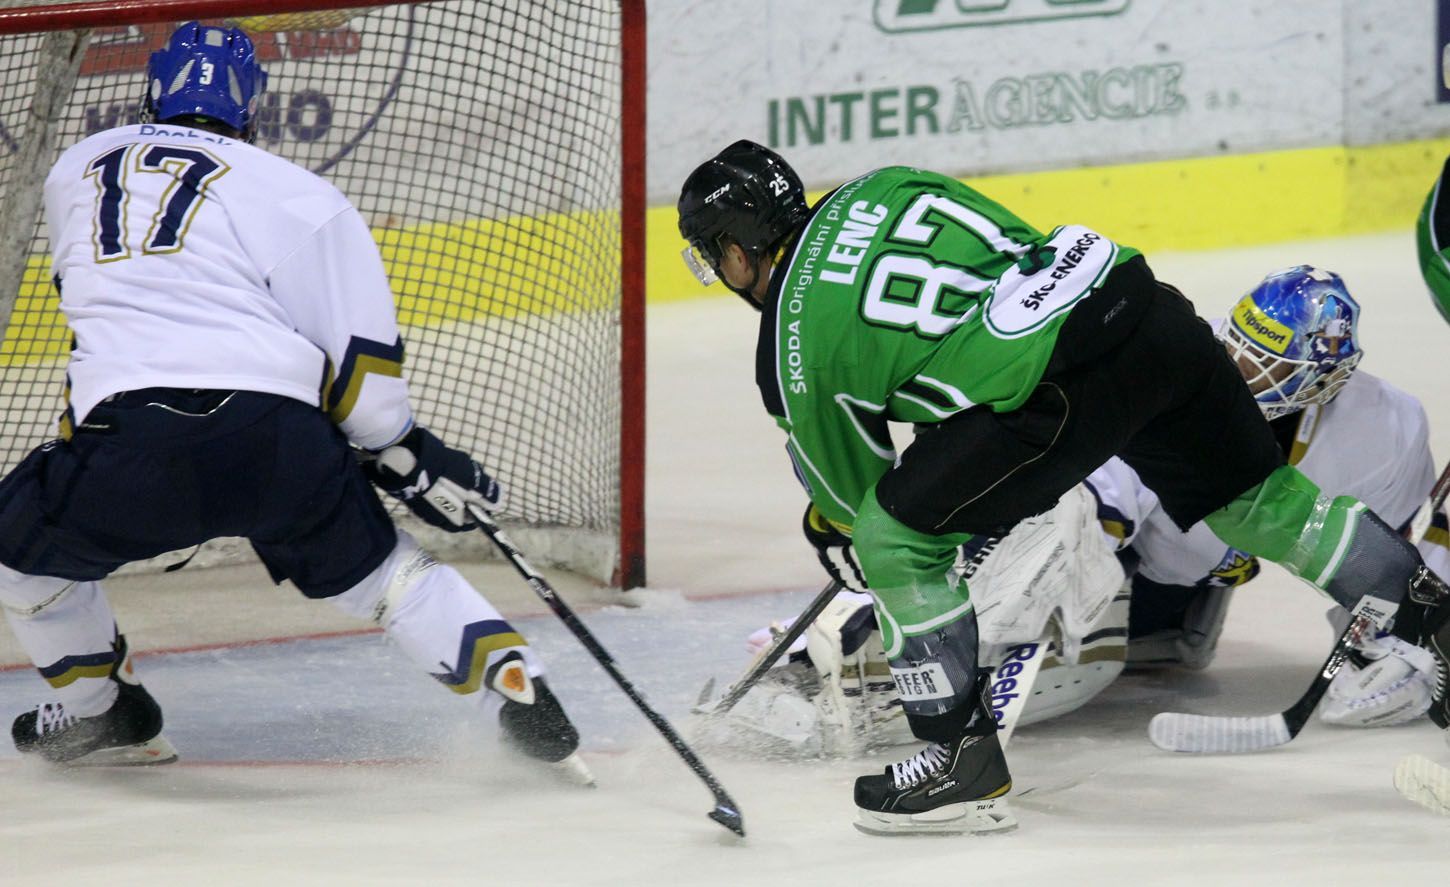 Mladoboleslavský hokejista Radan Lenc se snaží prostřelit kladenského brankáře Jana Cháberu v přípravném utkání před sezónou 2012/13.